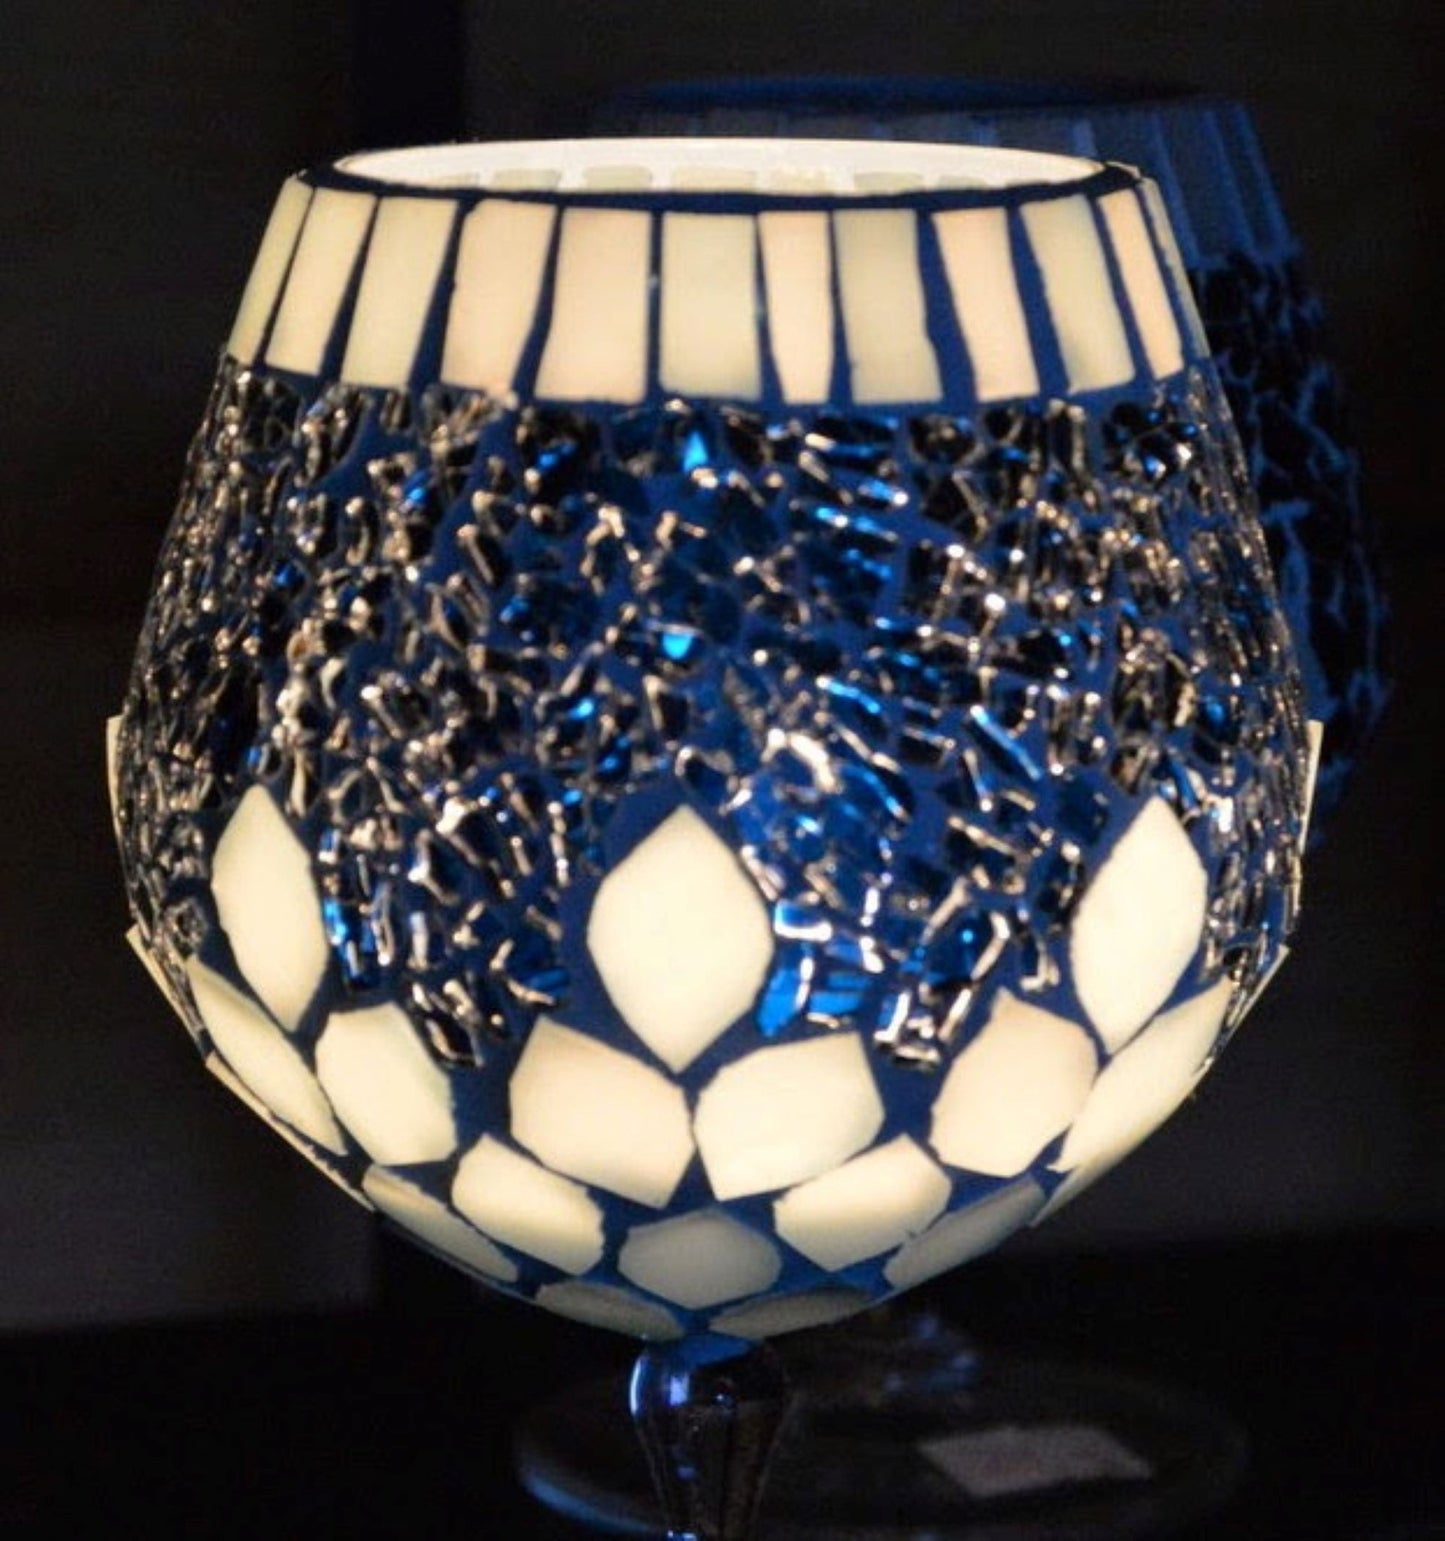 Mosaik Windlicht Eisblatt blau 145 mm hoch Kerzenhalter - Mosaikkasten aus alt mach neu blatt